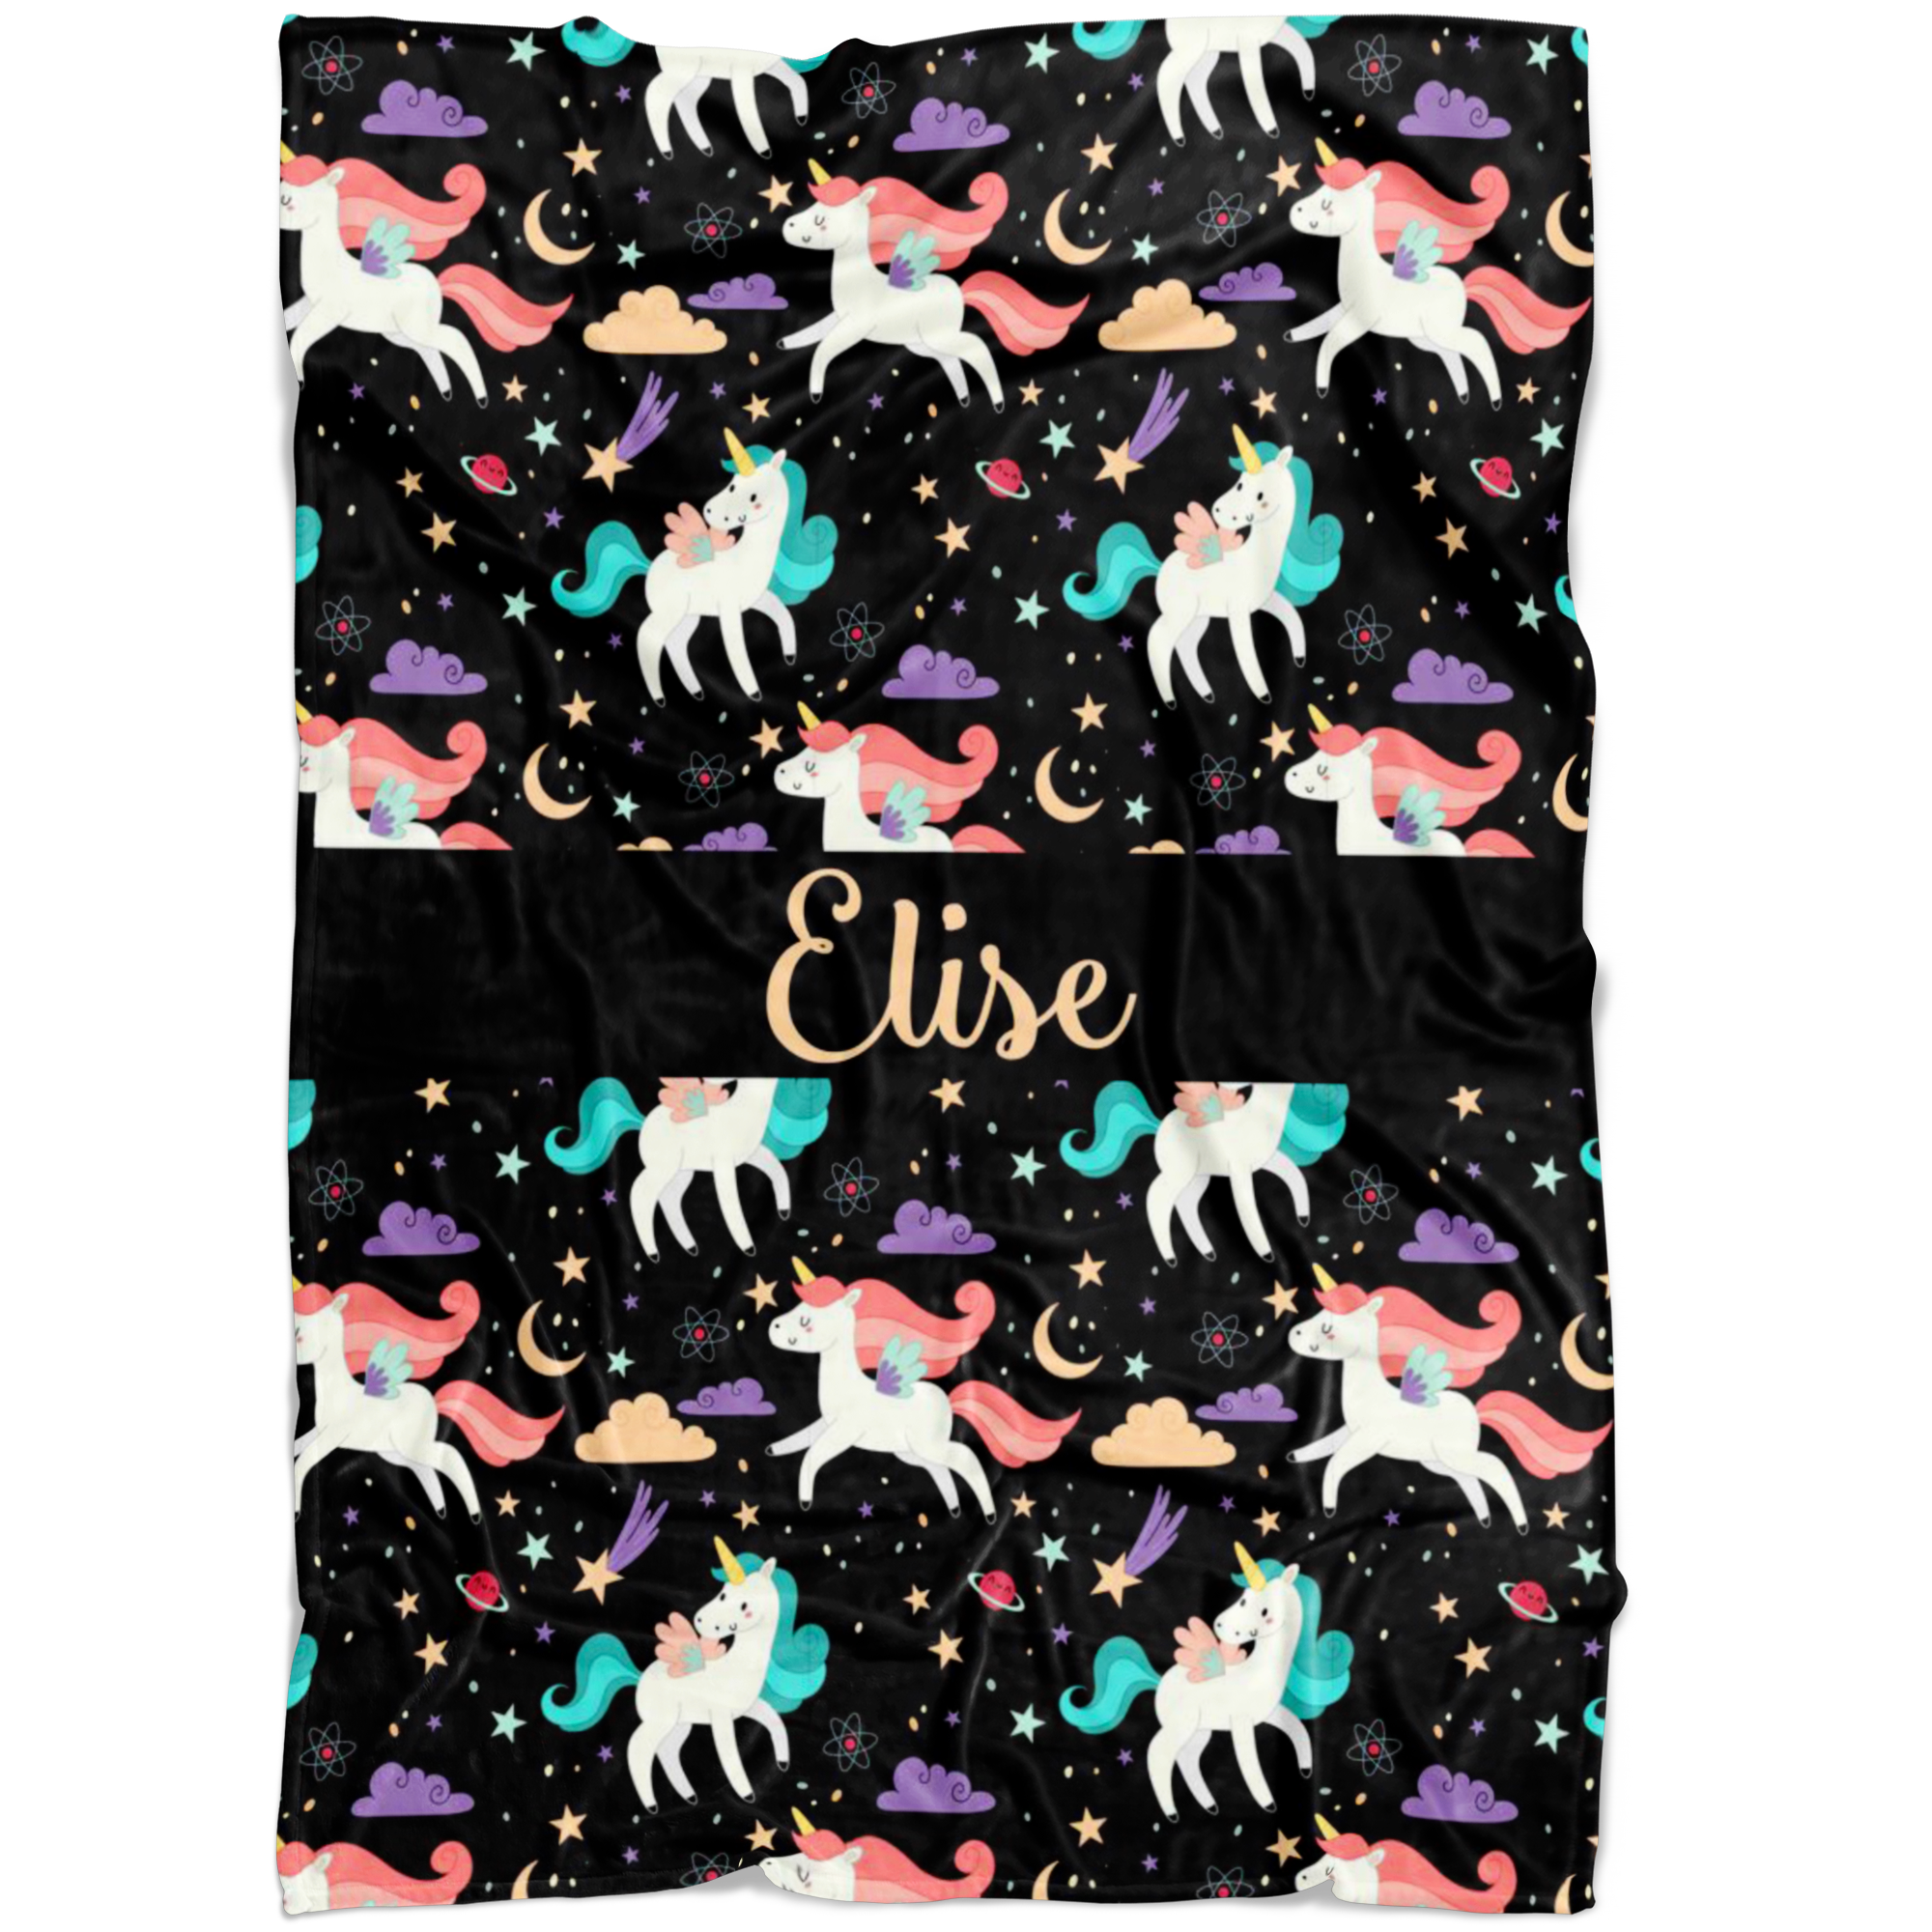 Personalized Name Unicorns Blanket for Girls - Elise